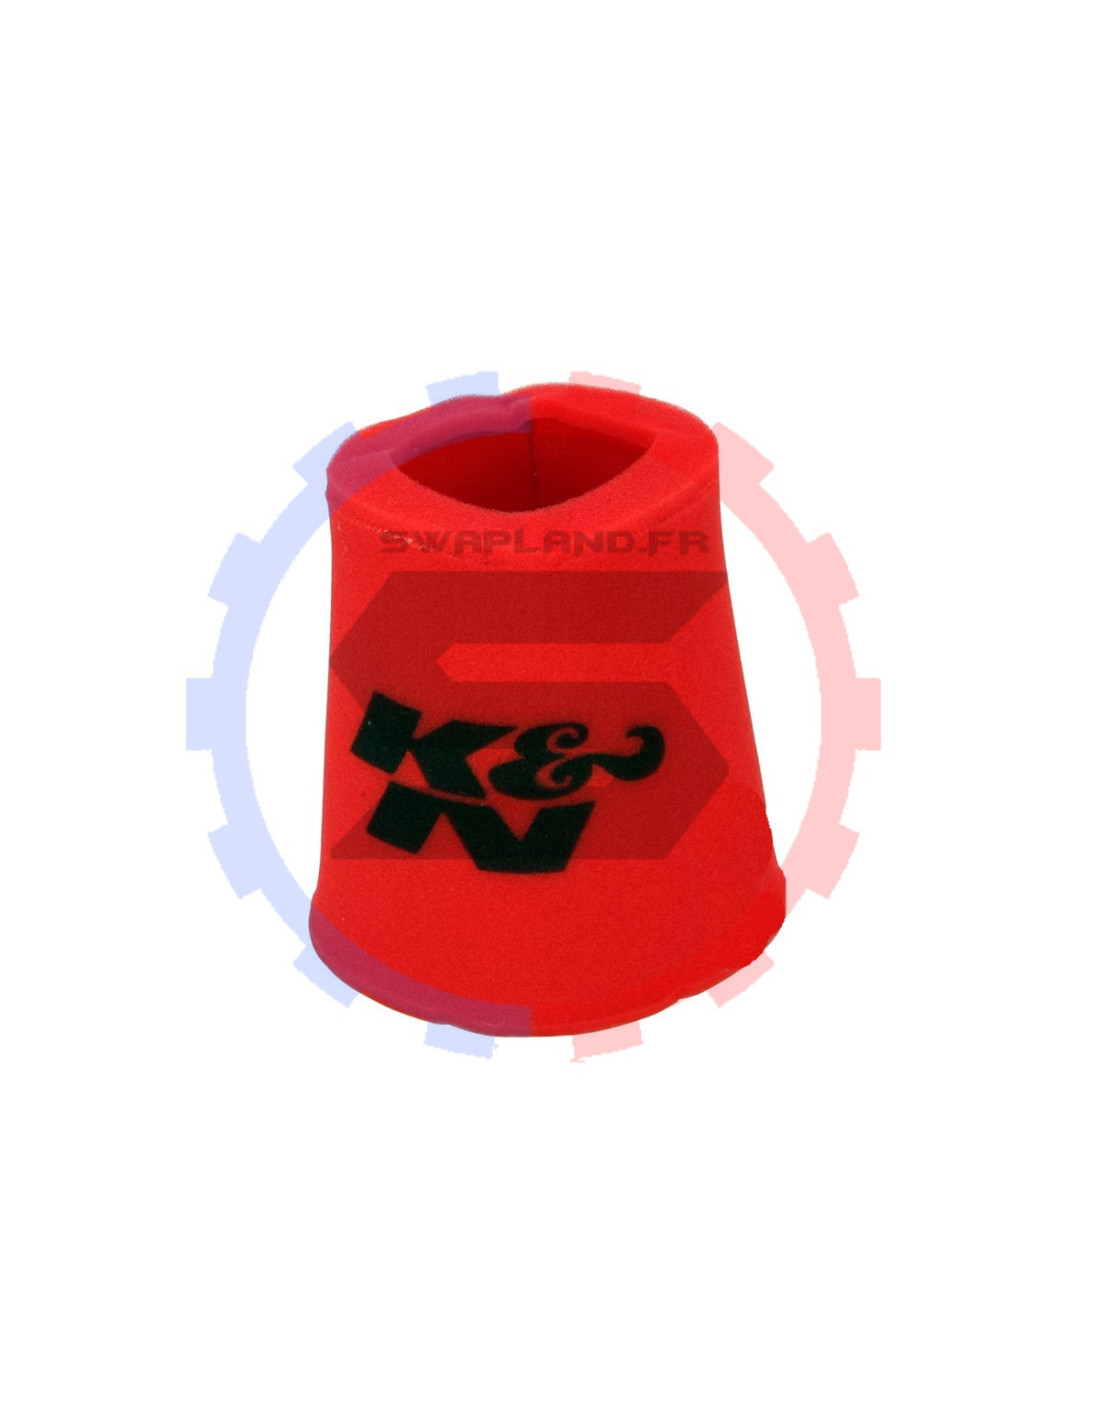 Filtre à air K&N conique fin en 102 mm rouge - SWAPLAND